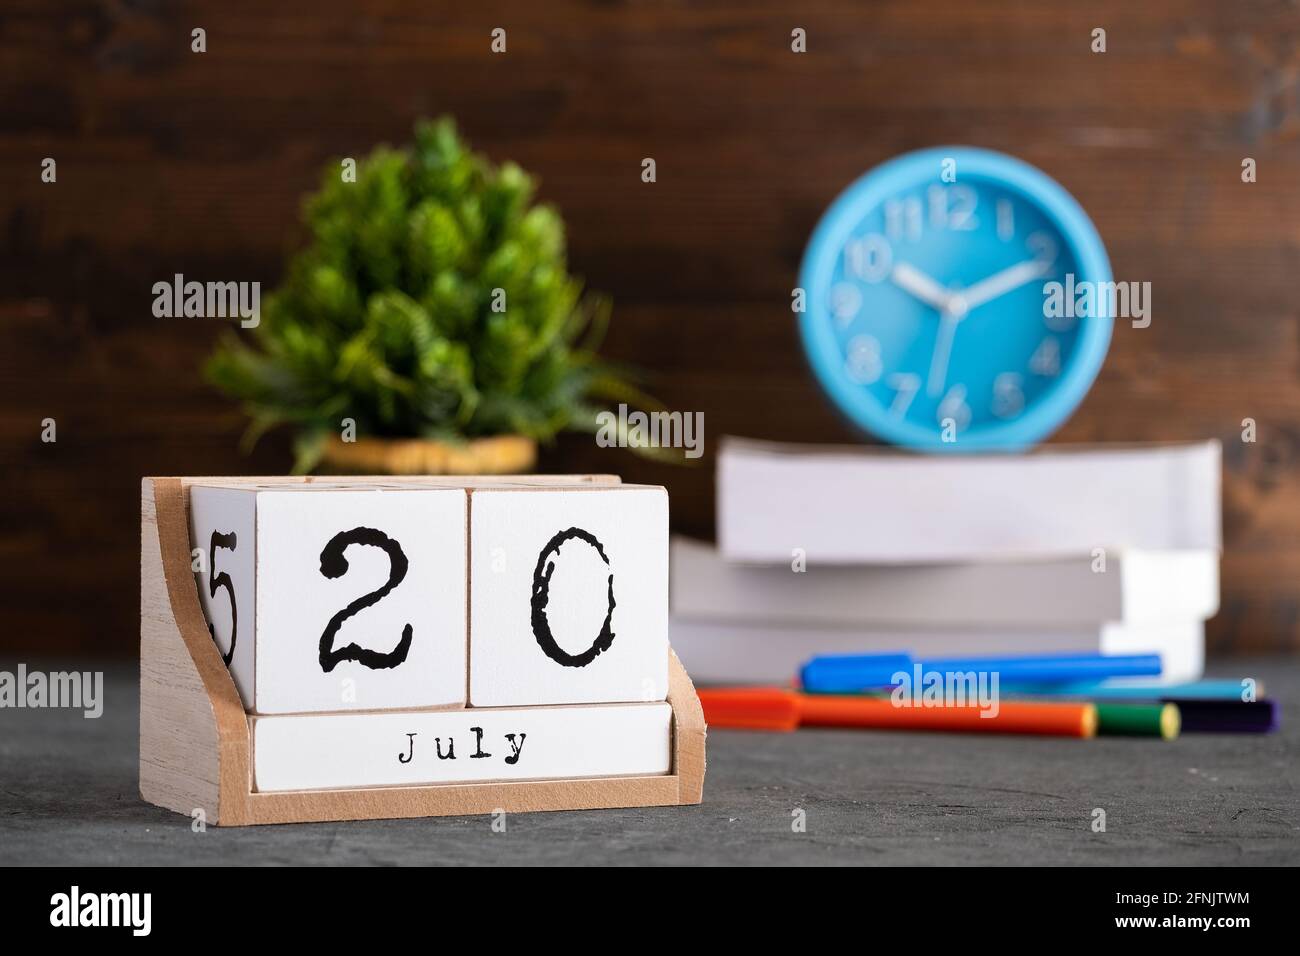 20 juillet. Juillet 20 calendrier cube en bois avec des objets flous sur fond. Banque D'Images